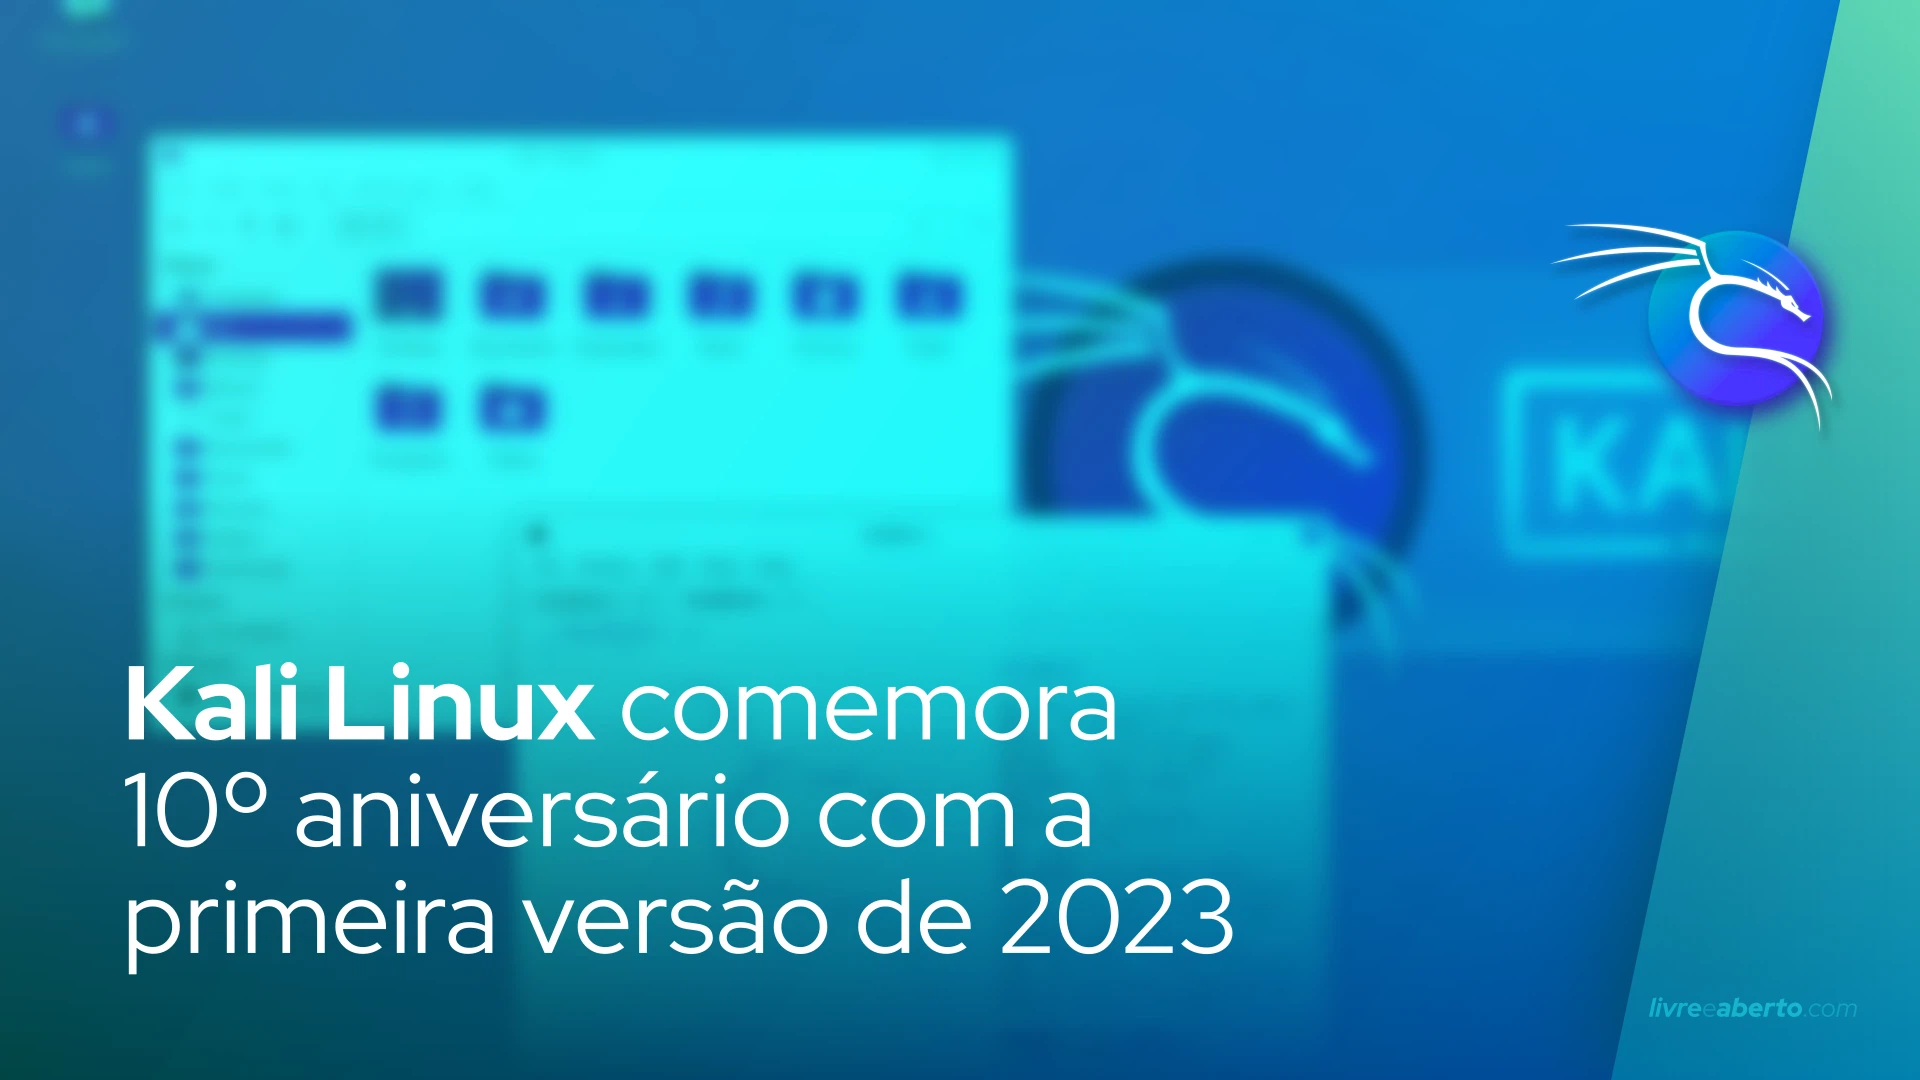 Kali Linux comemora 10º aniversário com a primeira versão de 2023